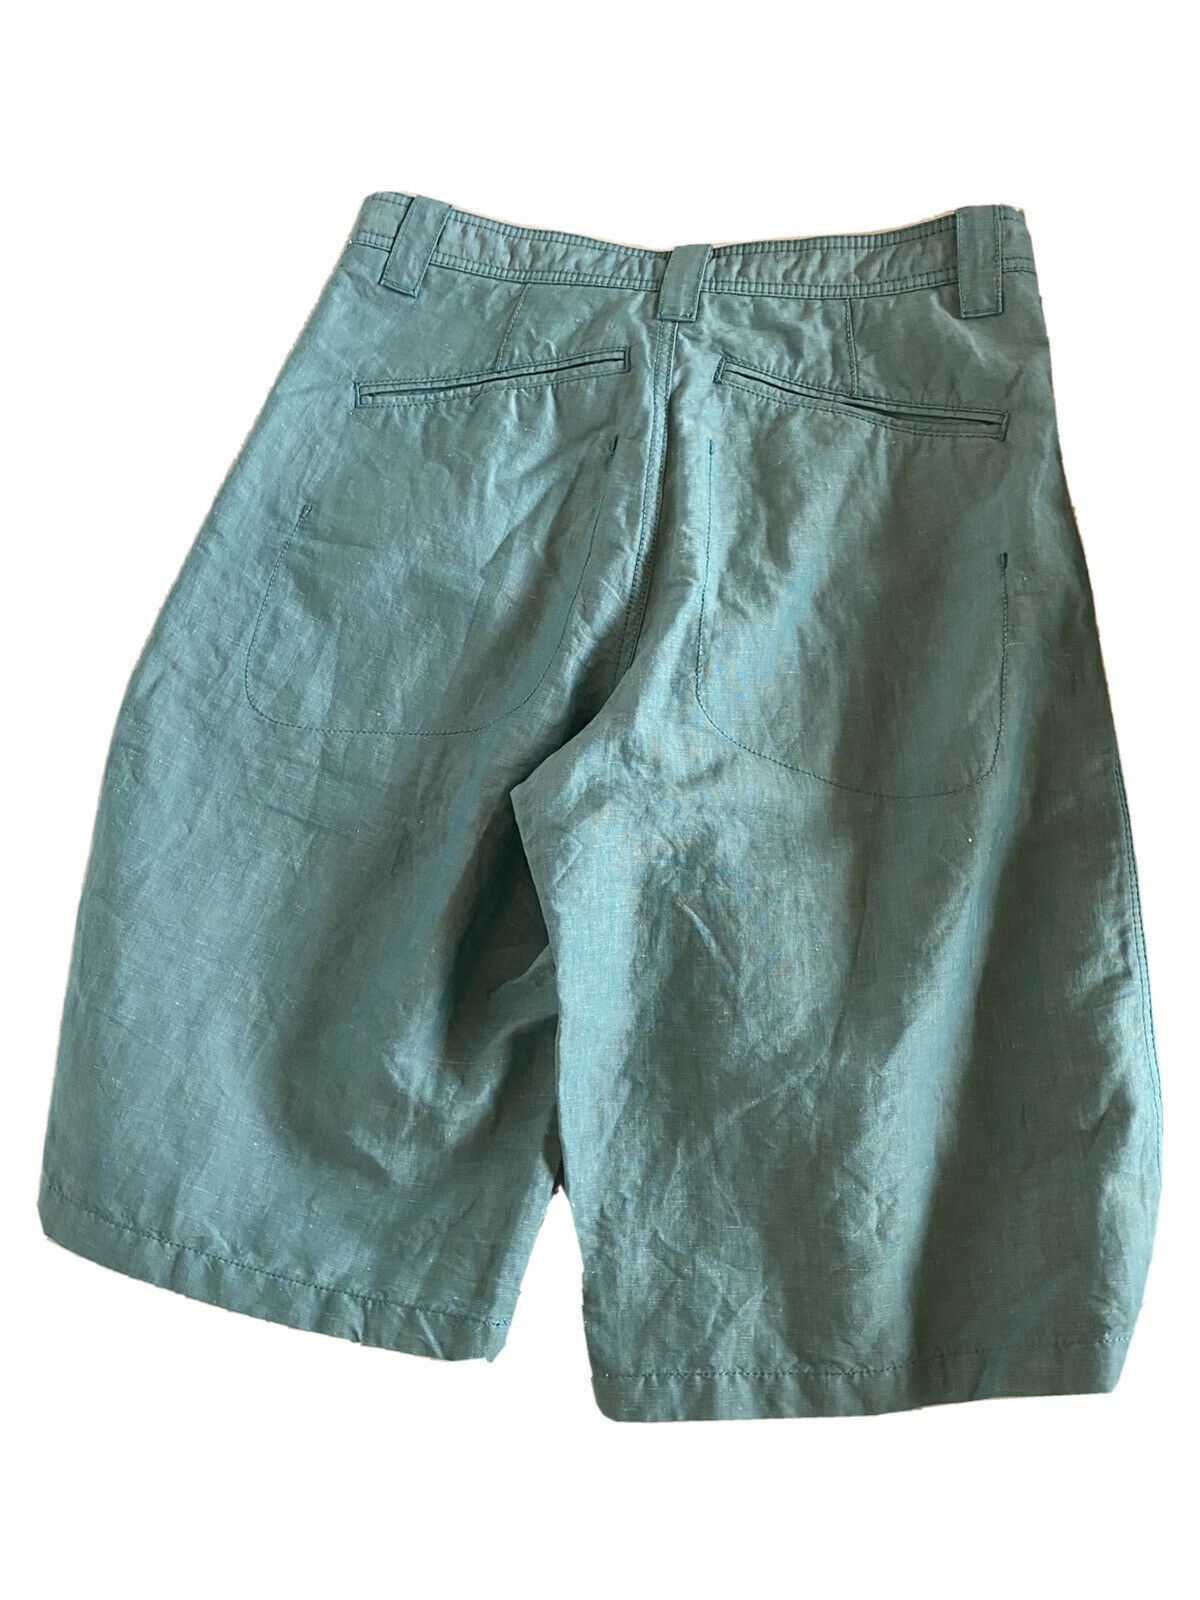 Мужские светло-зеленые шорты Armani Collezioni, размер 30 США (46 ЕС), NCP80S, NWT, 295 долларов США.